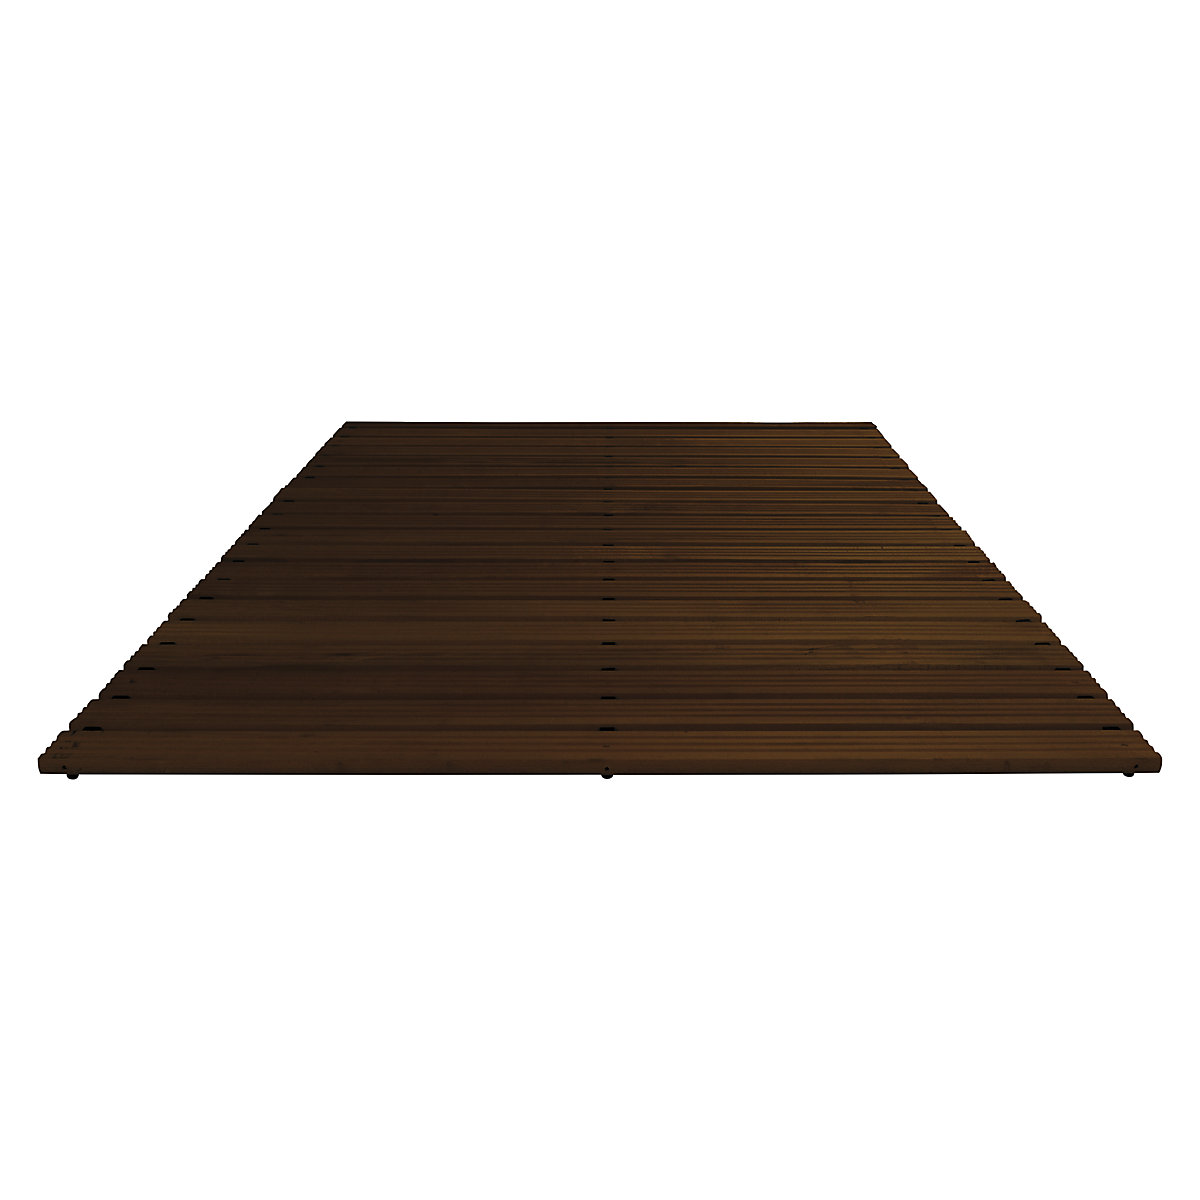 Pasarela de madera con barnizado oscuro, por metro lineal, sin biselado, anchura 1500 mm